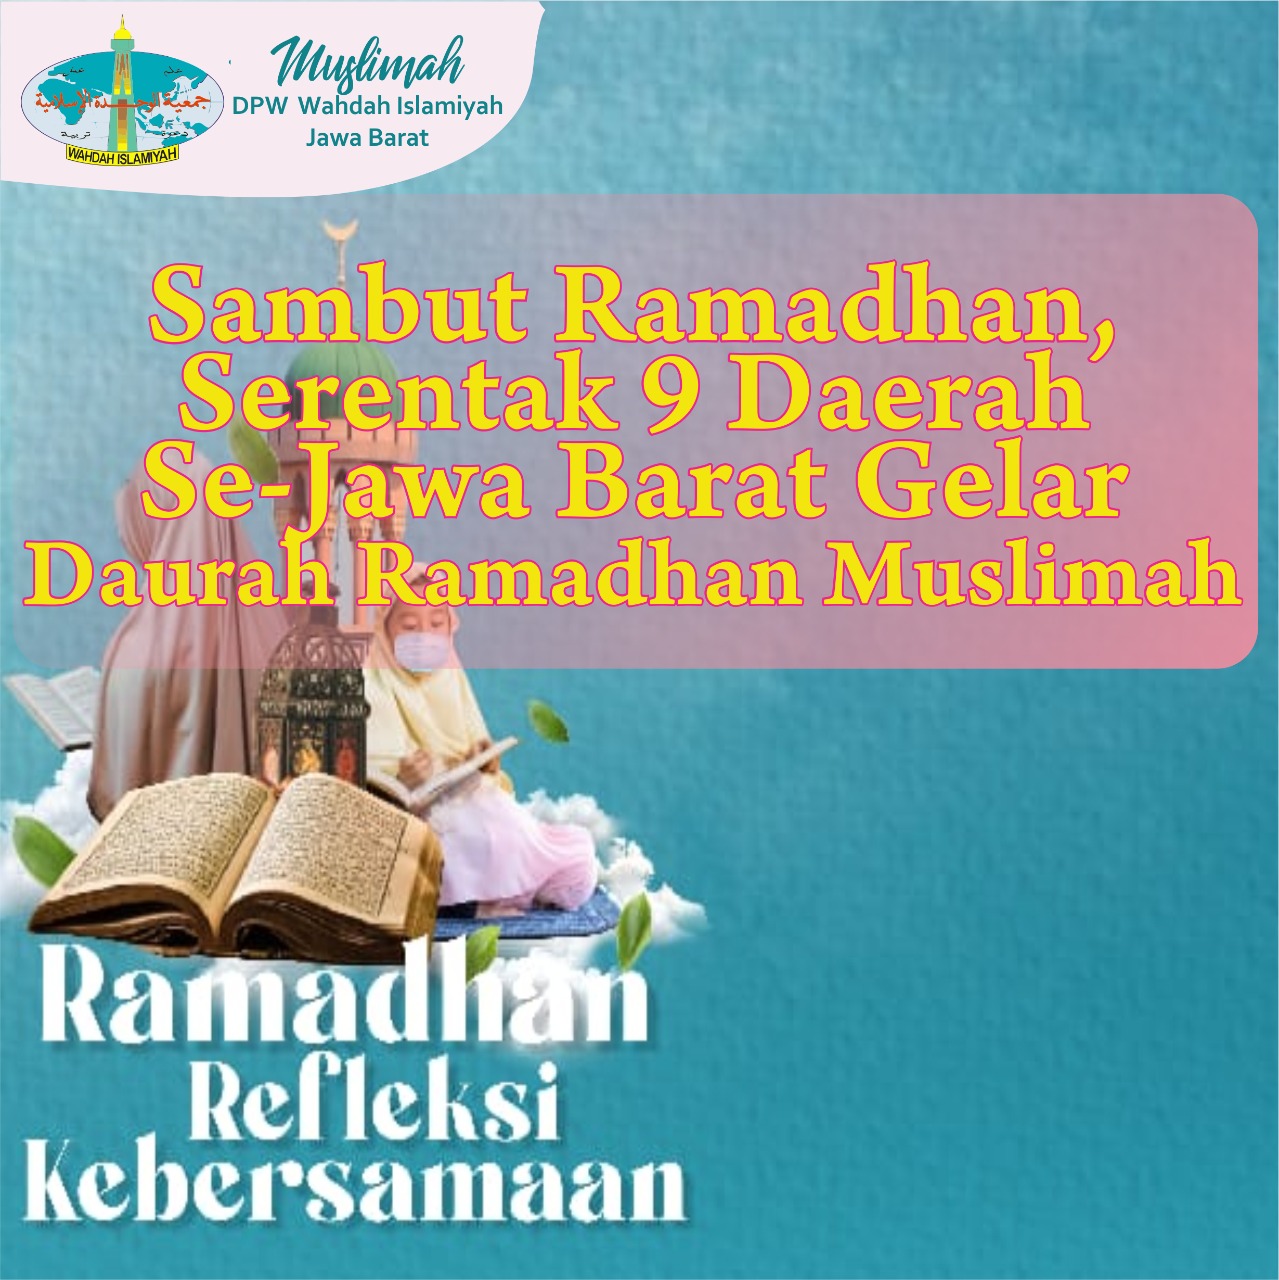 Sambut Ramadhan, Serentak 9 Daerah Se-Jawa Barat Gelar Daurah Ramadhan Muslimah